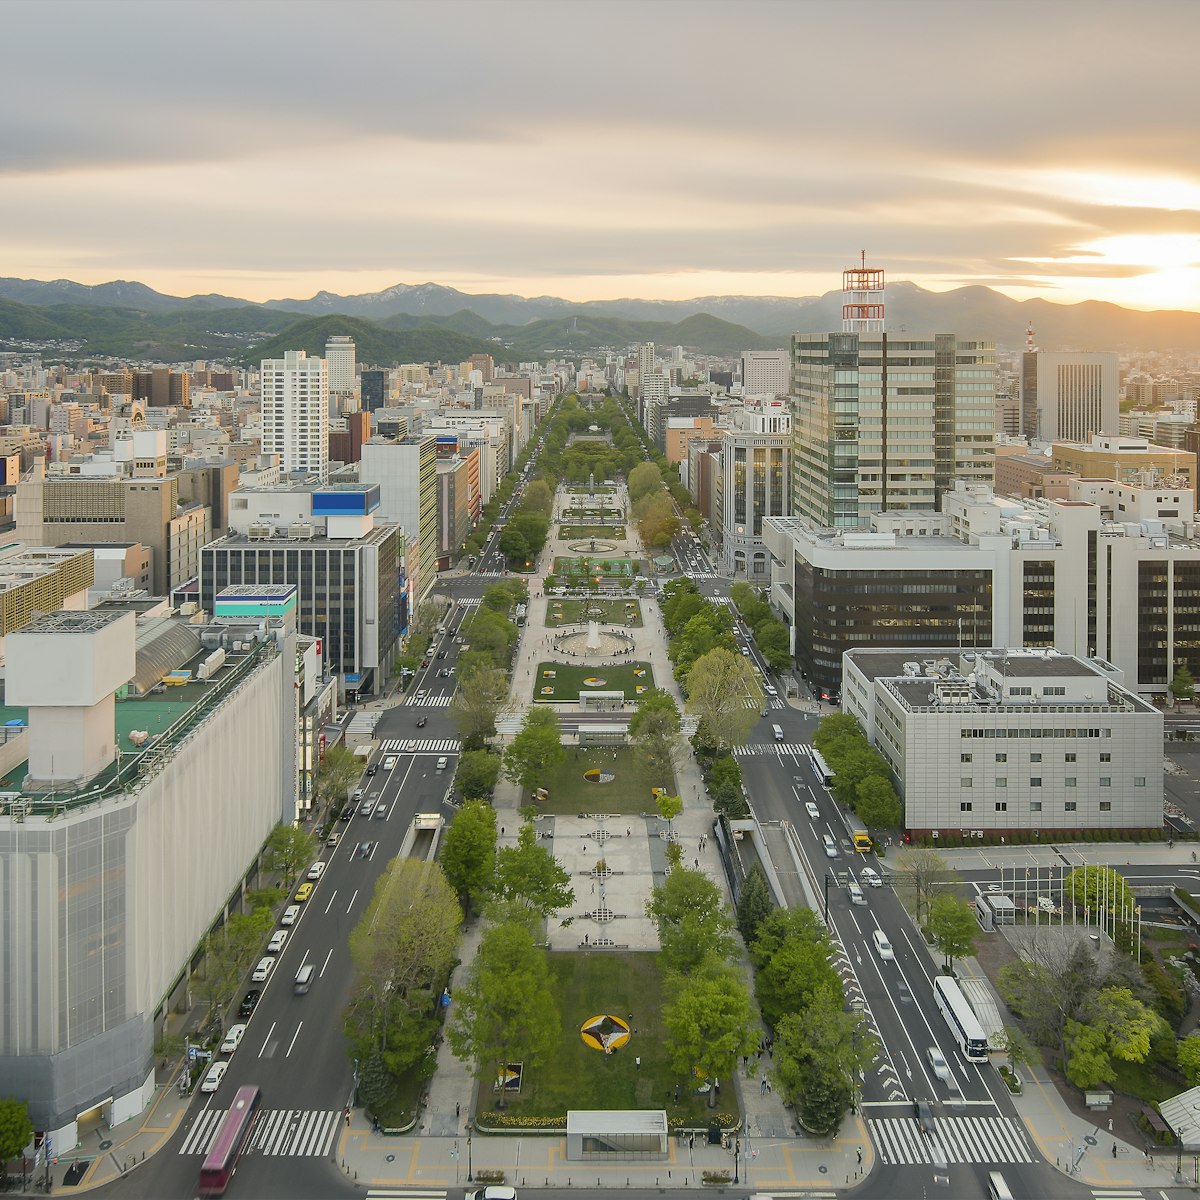 Cityscape of Sapporo at odori Park, Japan